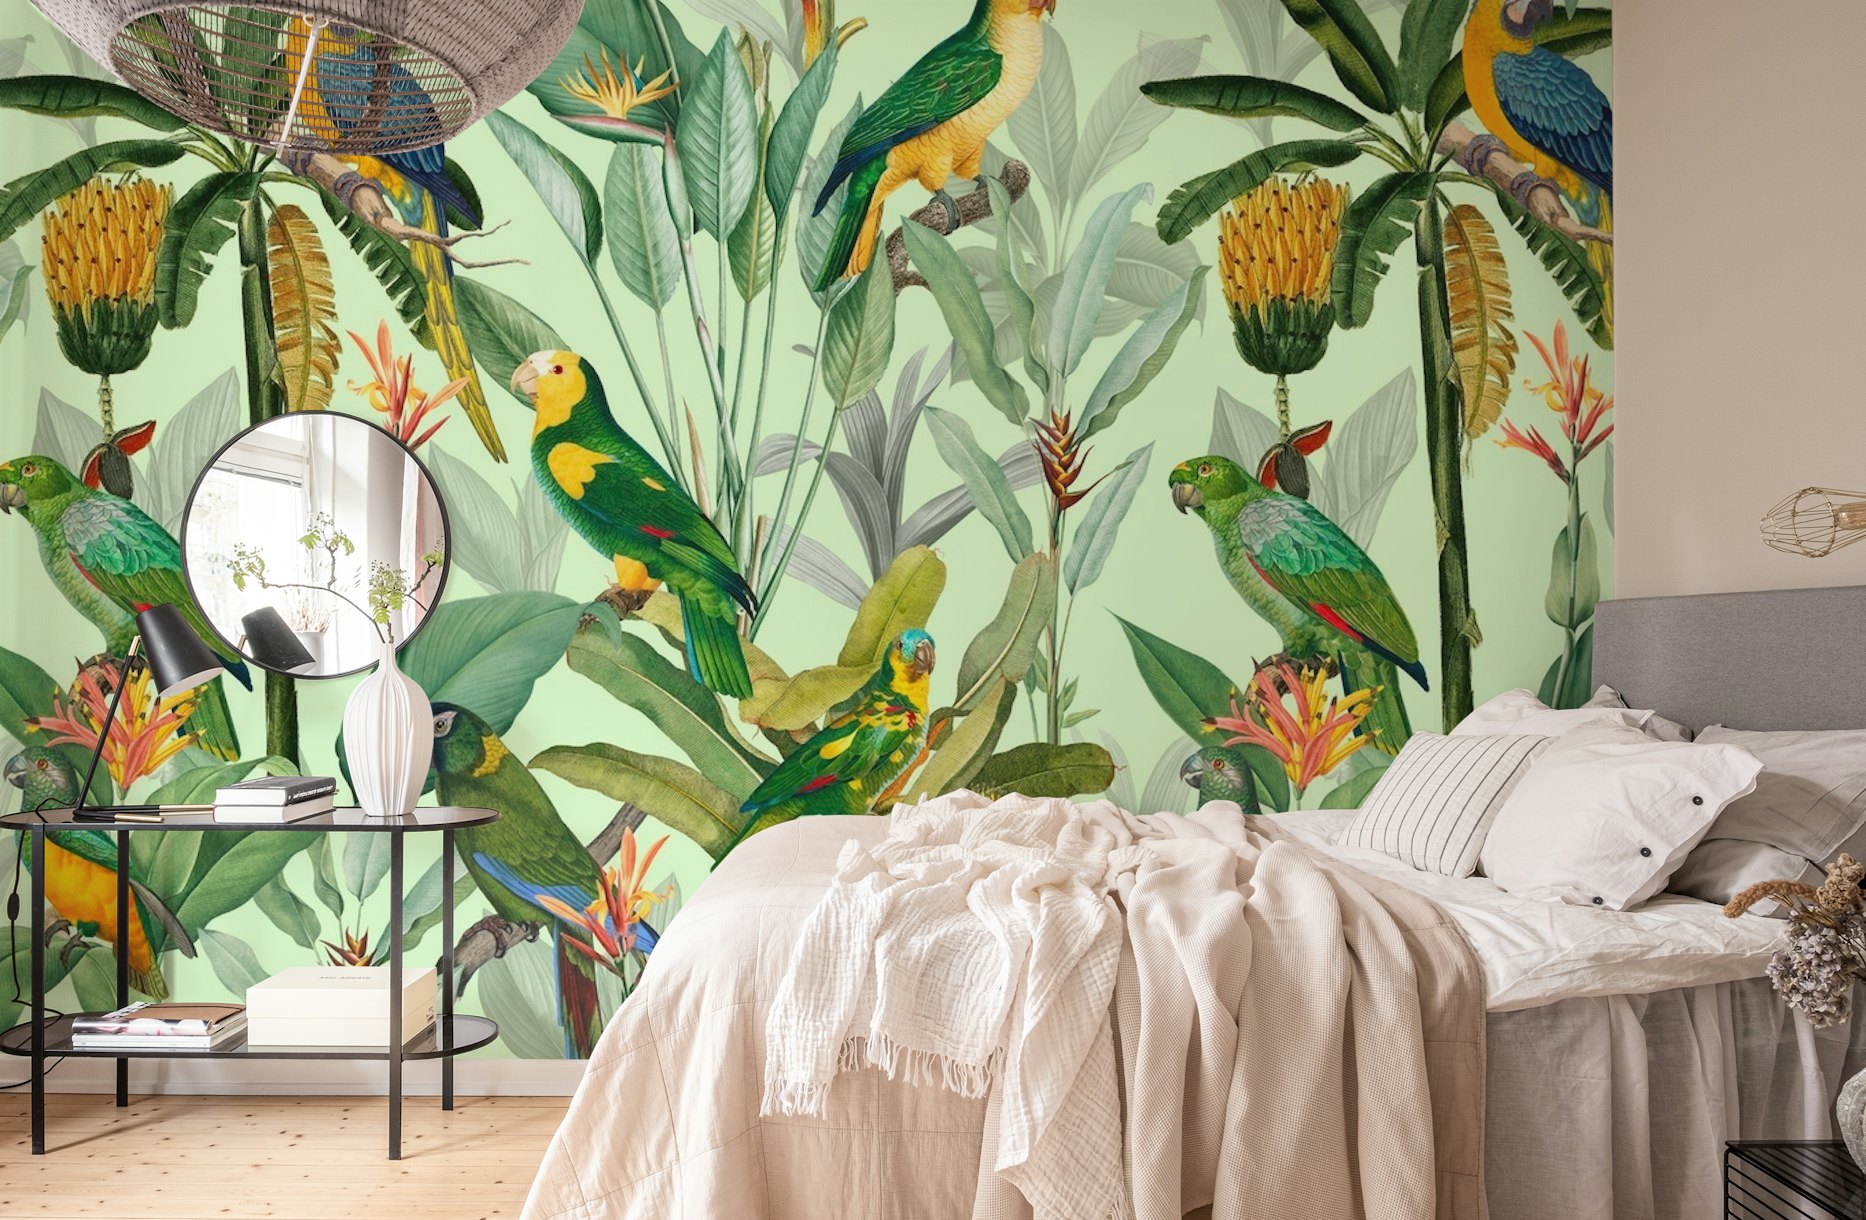 Bananas and Parrots Jungle papel pintado